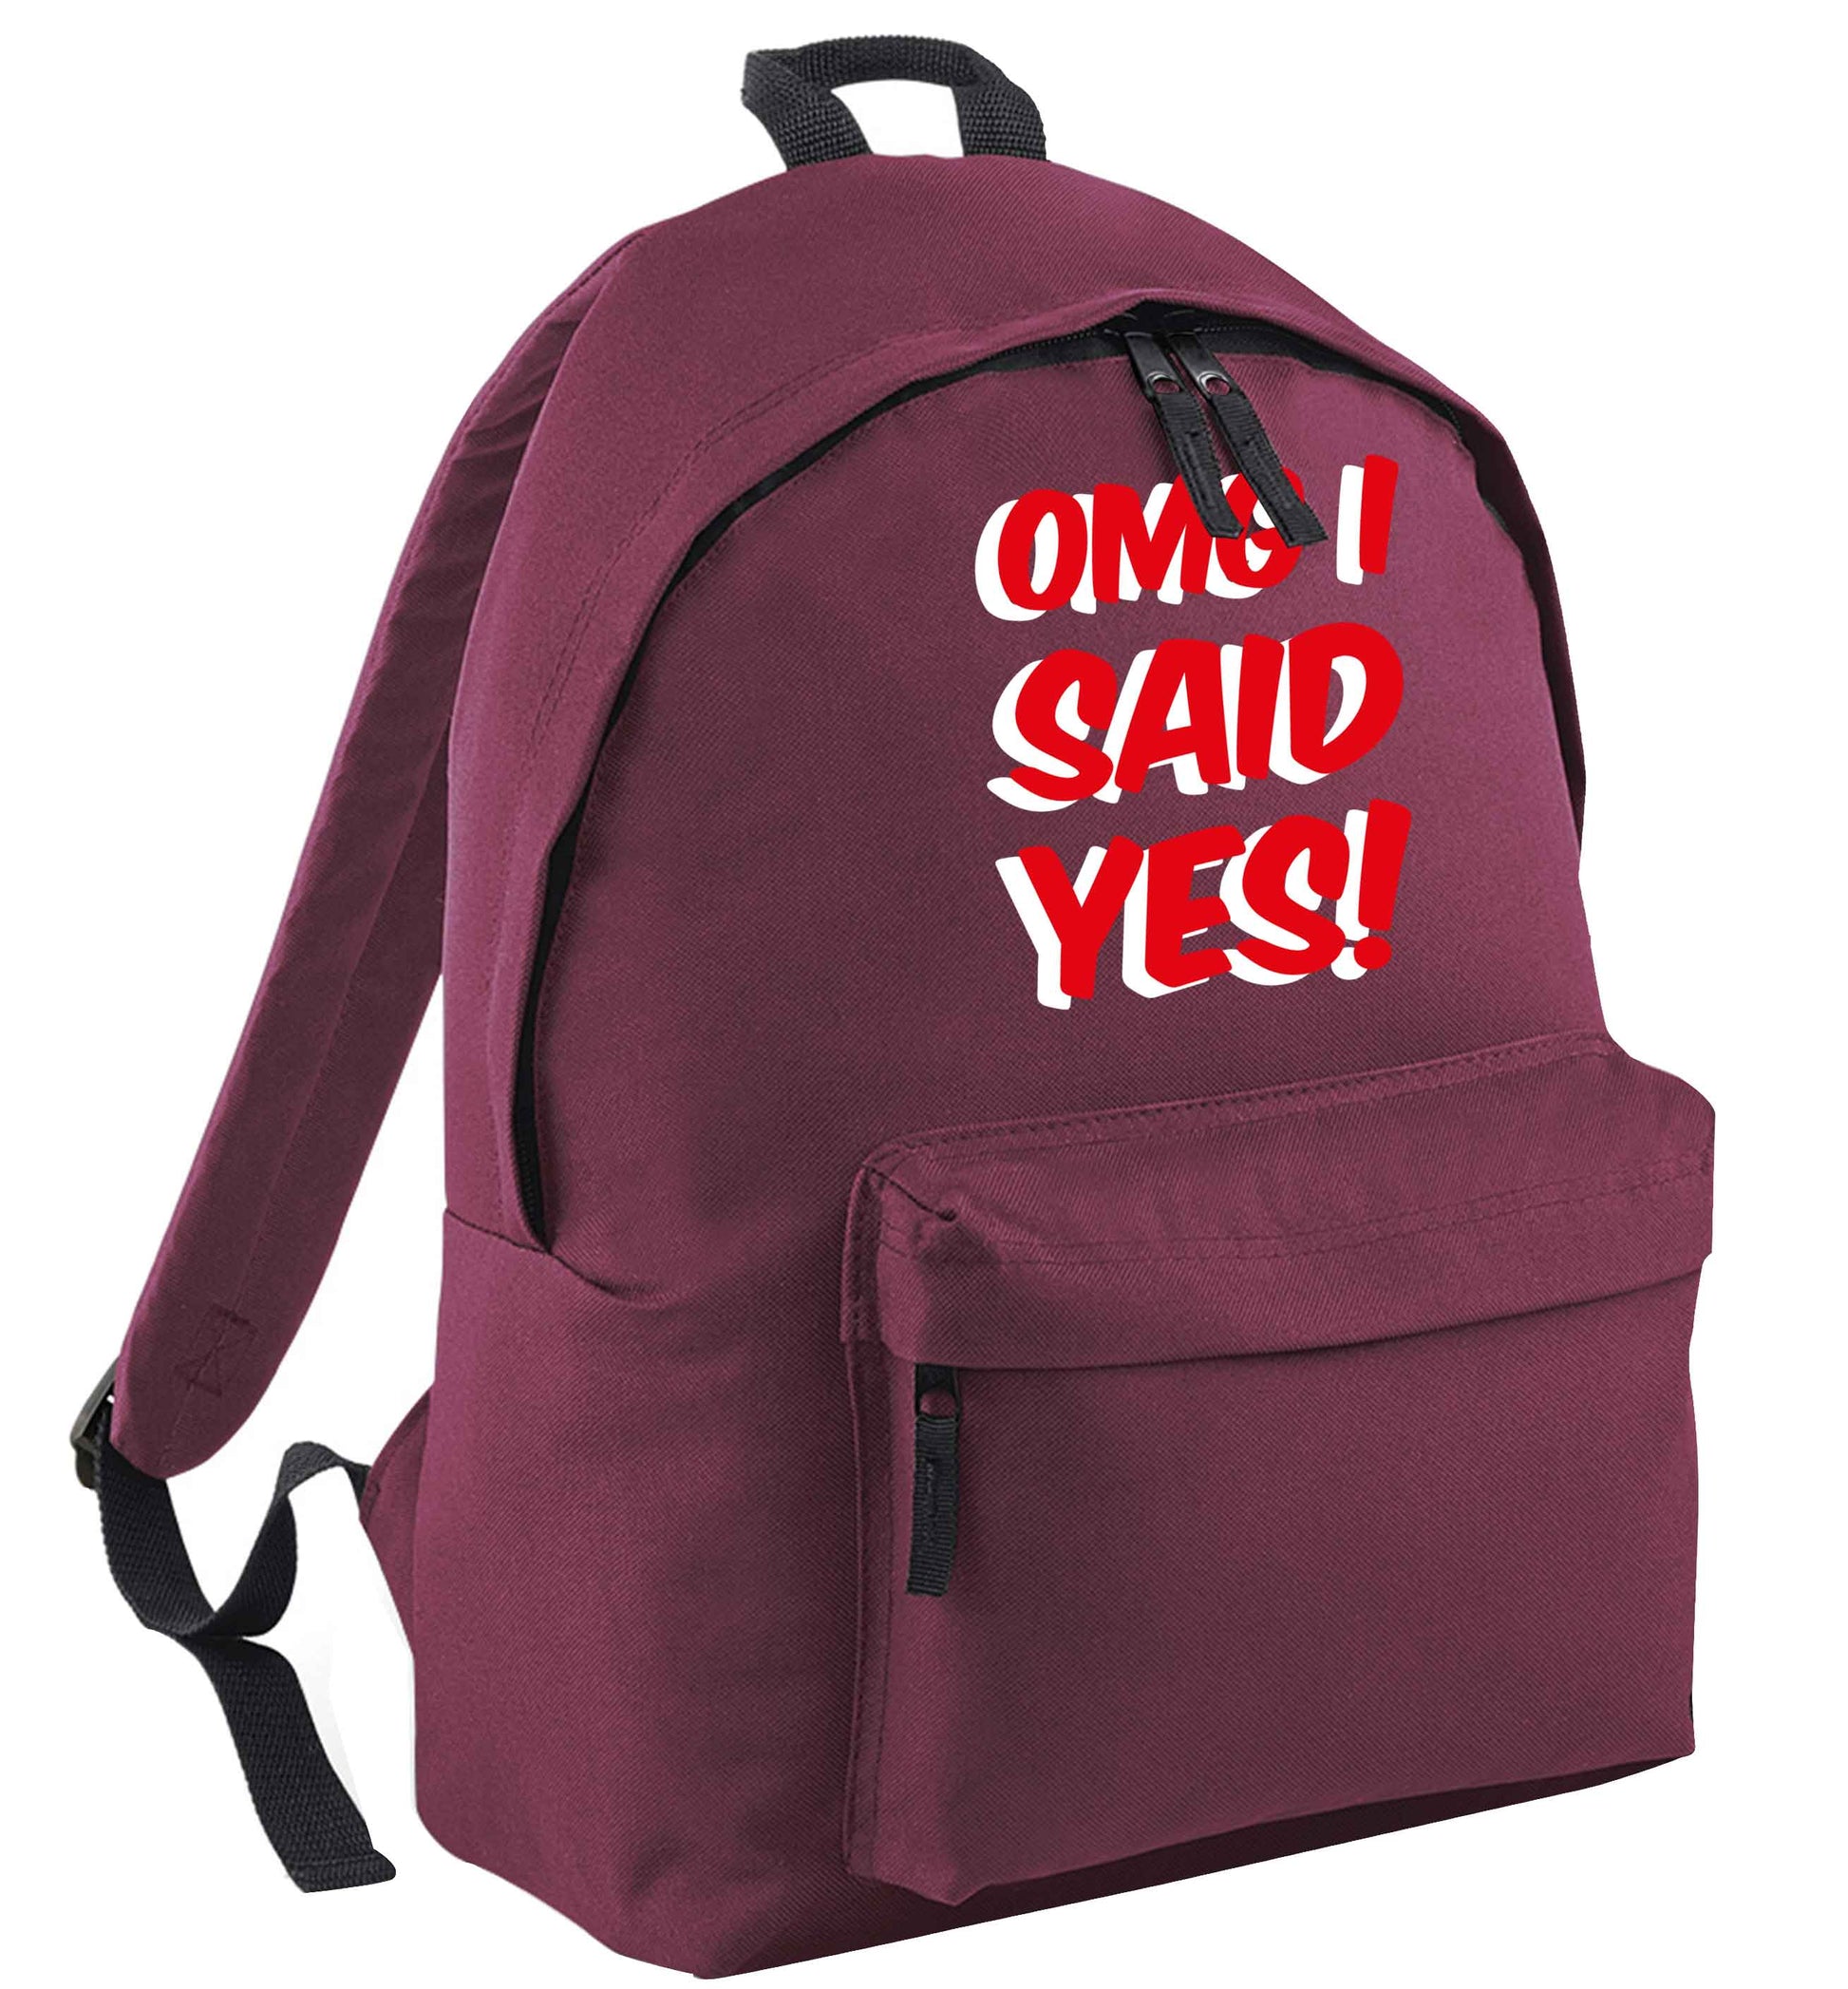 Omg I said yes maroon adults backpack